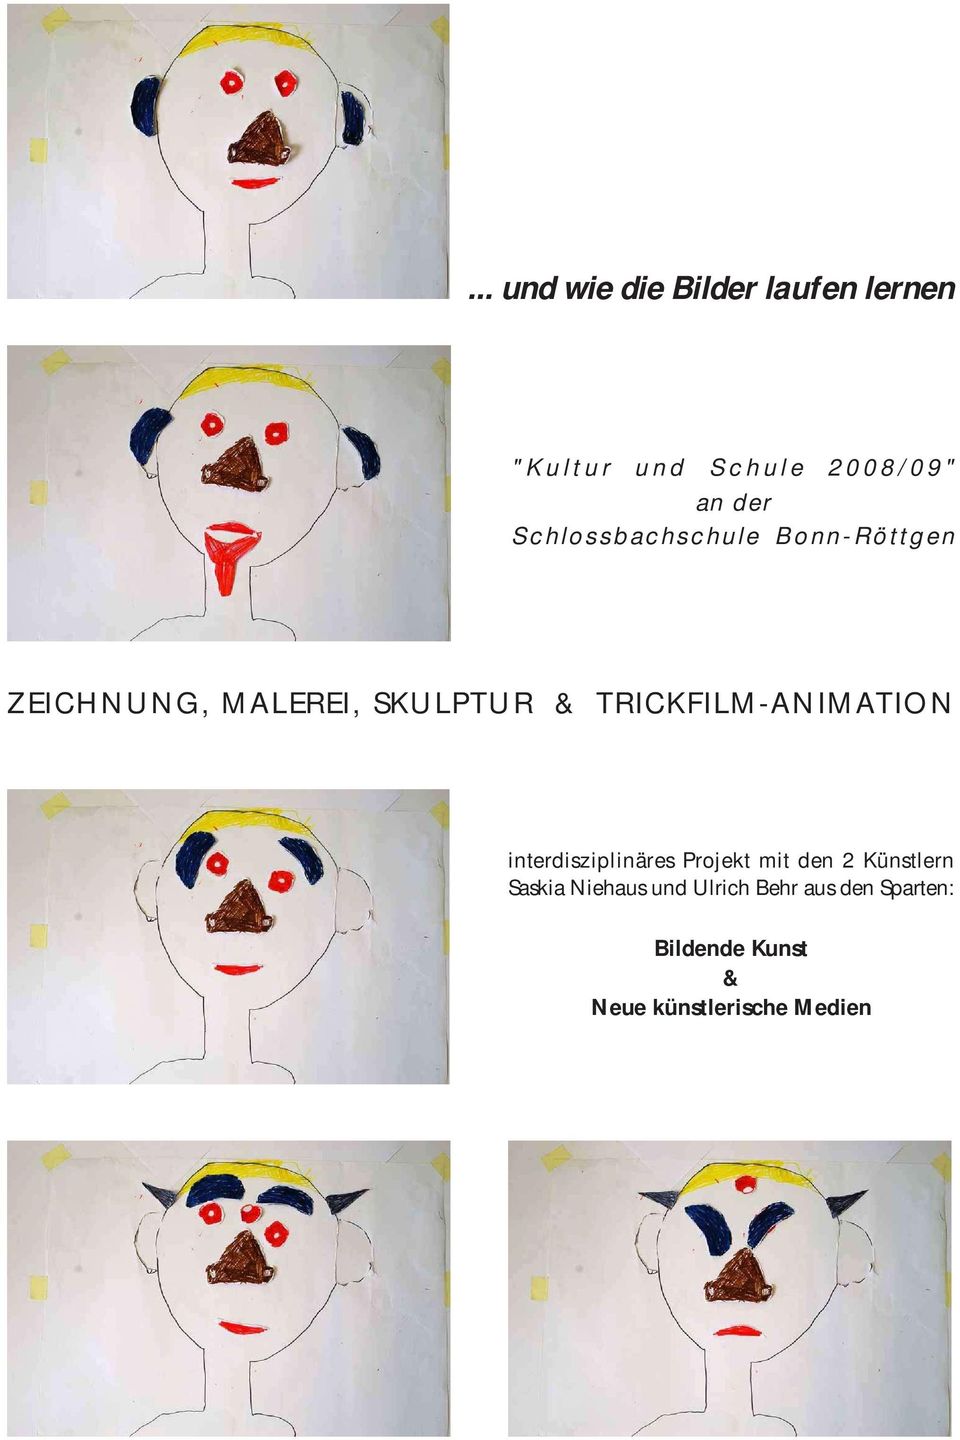 TRICKFILM-ANIMATION interdisziplinäres Projekt mit den 2 Künstlern